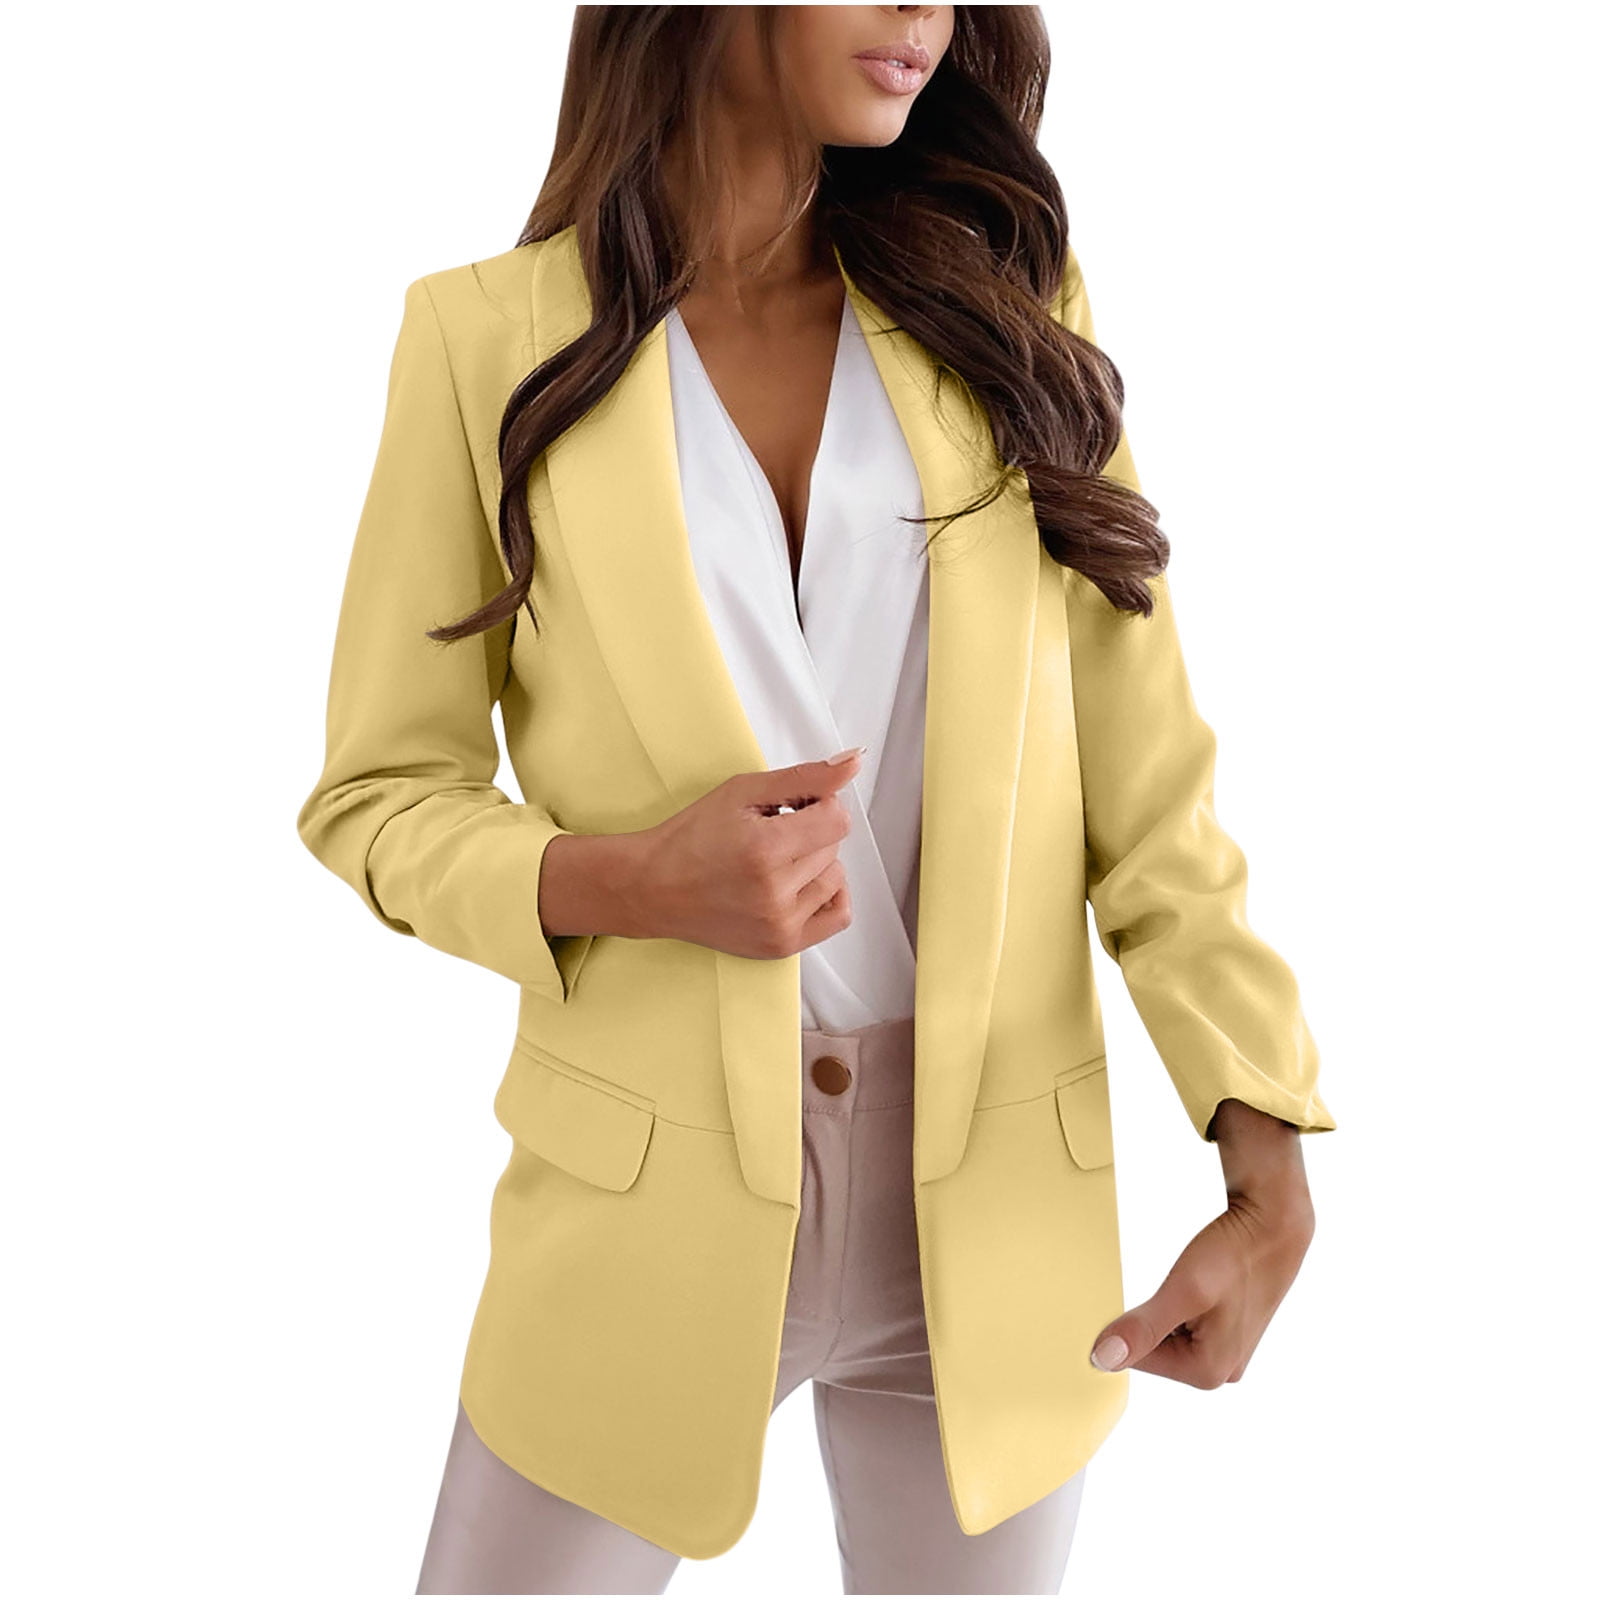 Ozmmyan Womens Ladies Solid Turn Down Collar Jacket Long Sleeve Coat ...